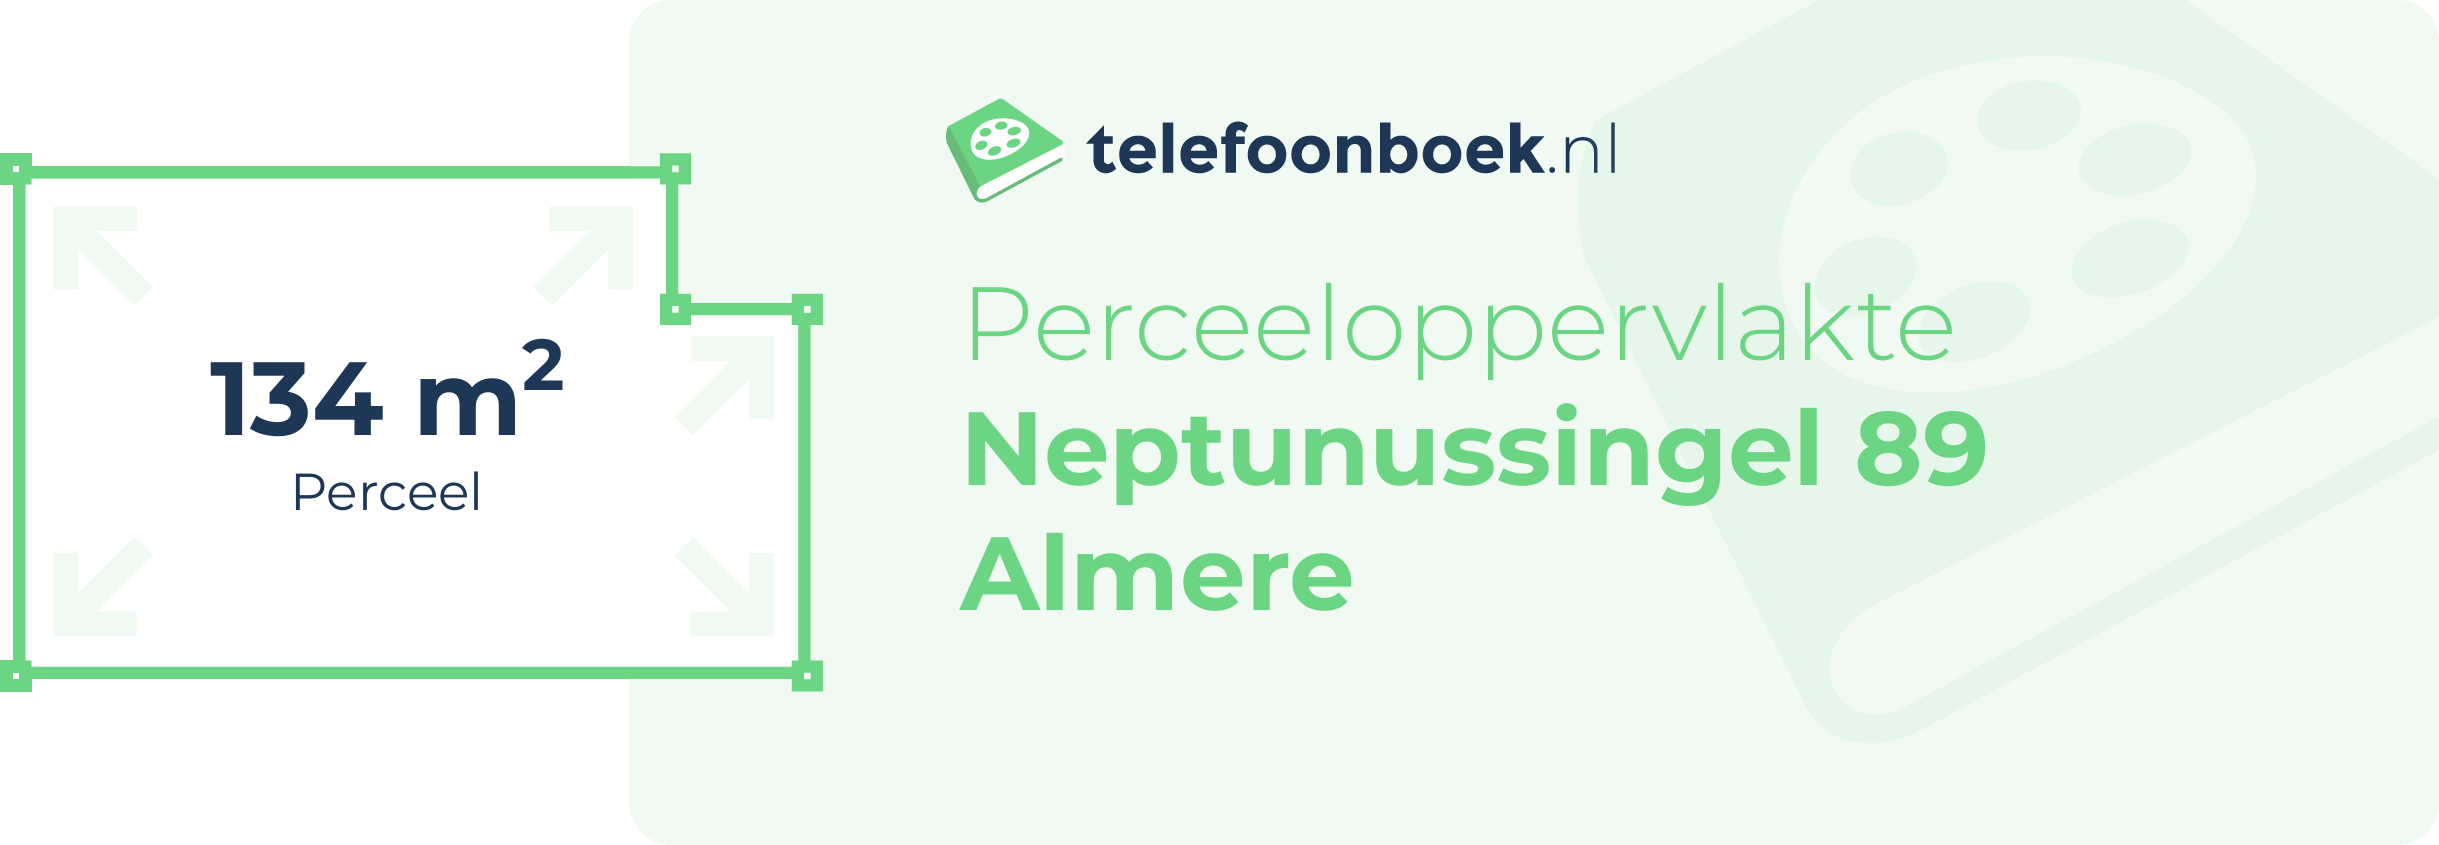 Perceeloppervlakte Neptunussingel 89 Almere